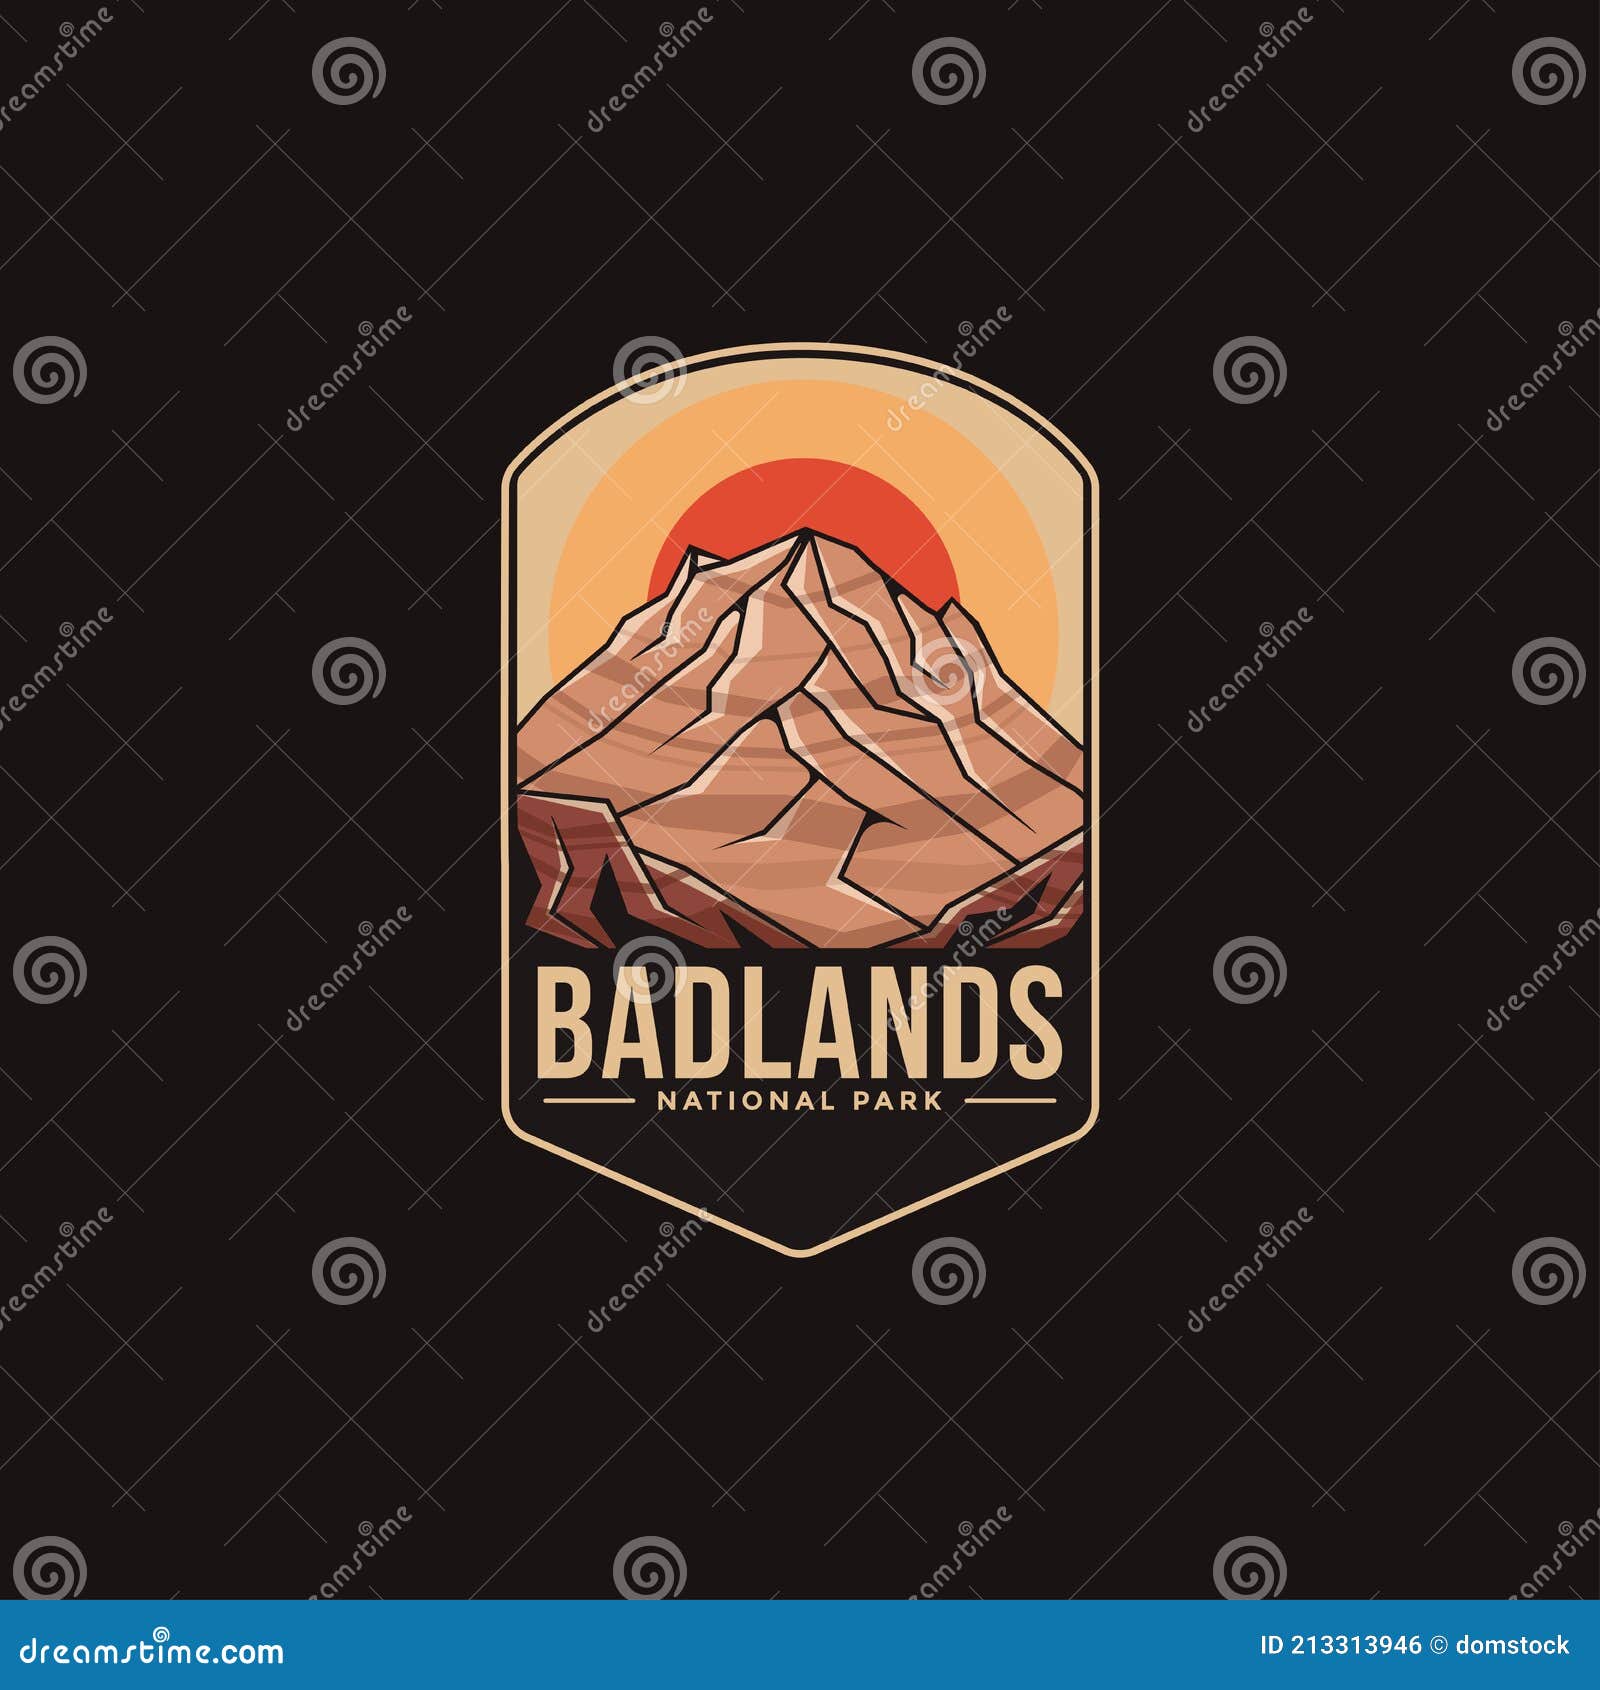 emblem patch logo  of badlands national park